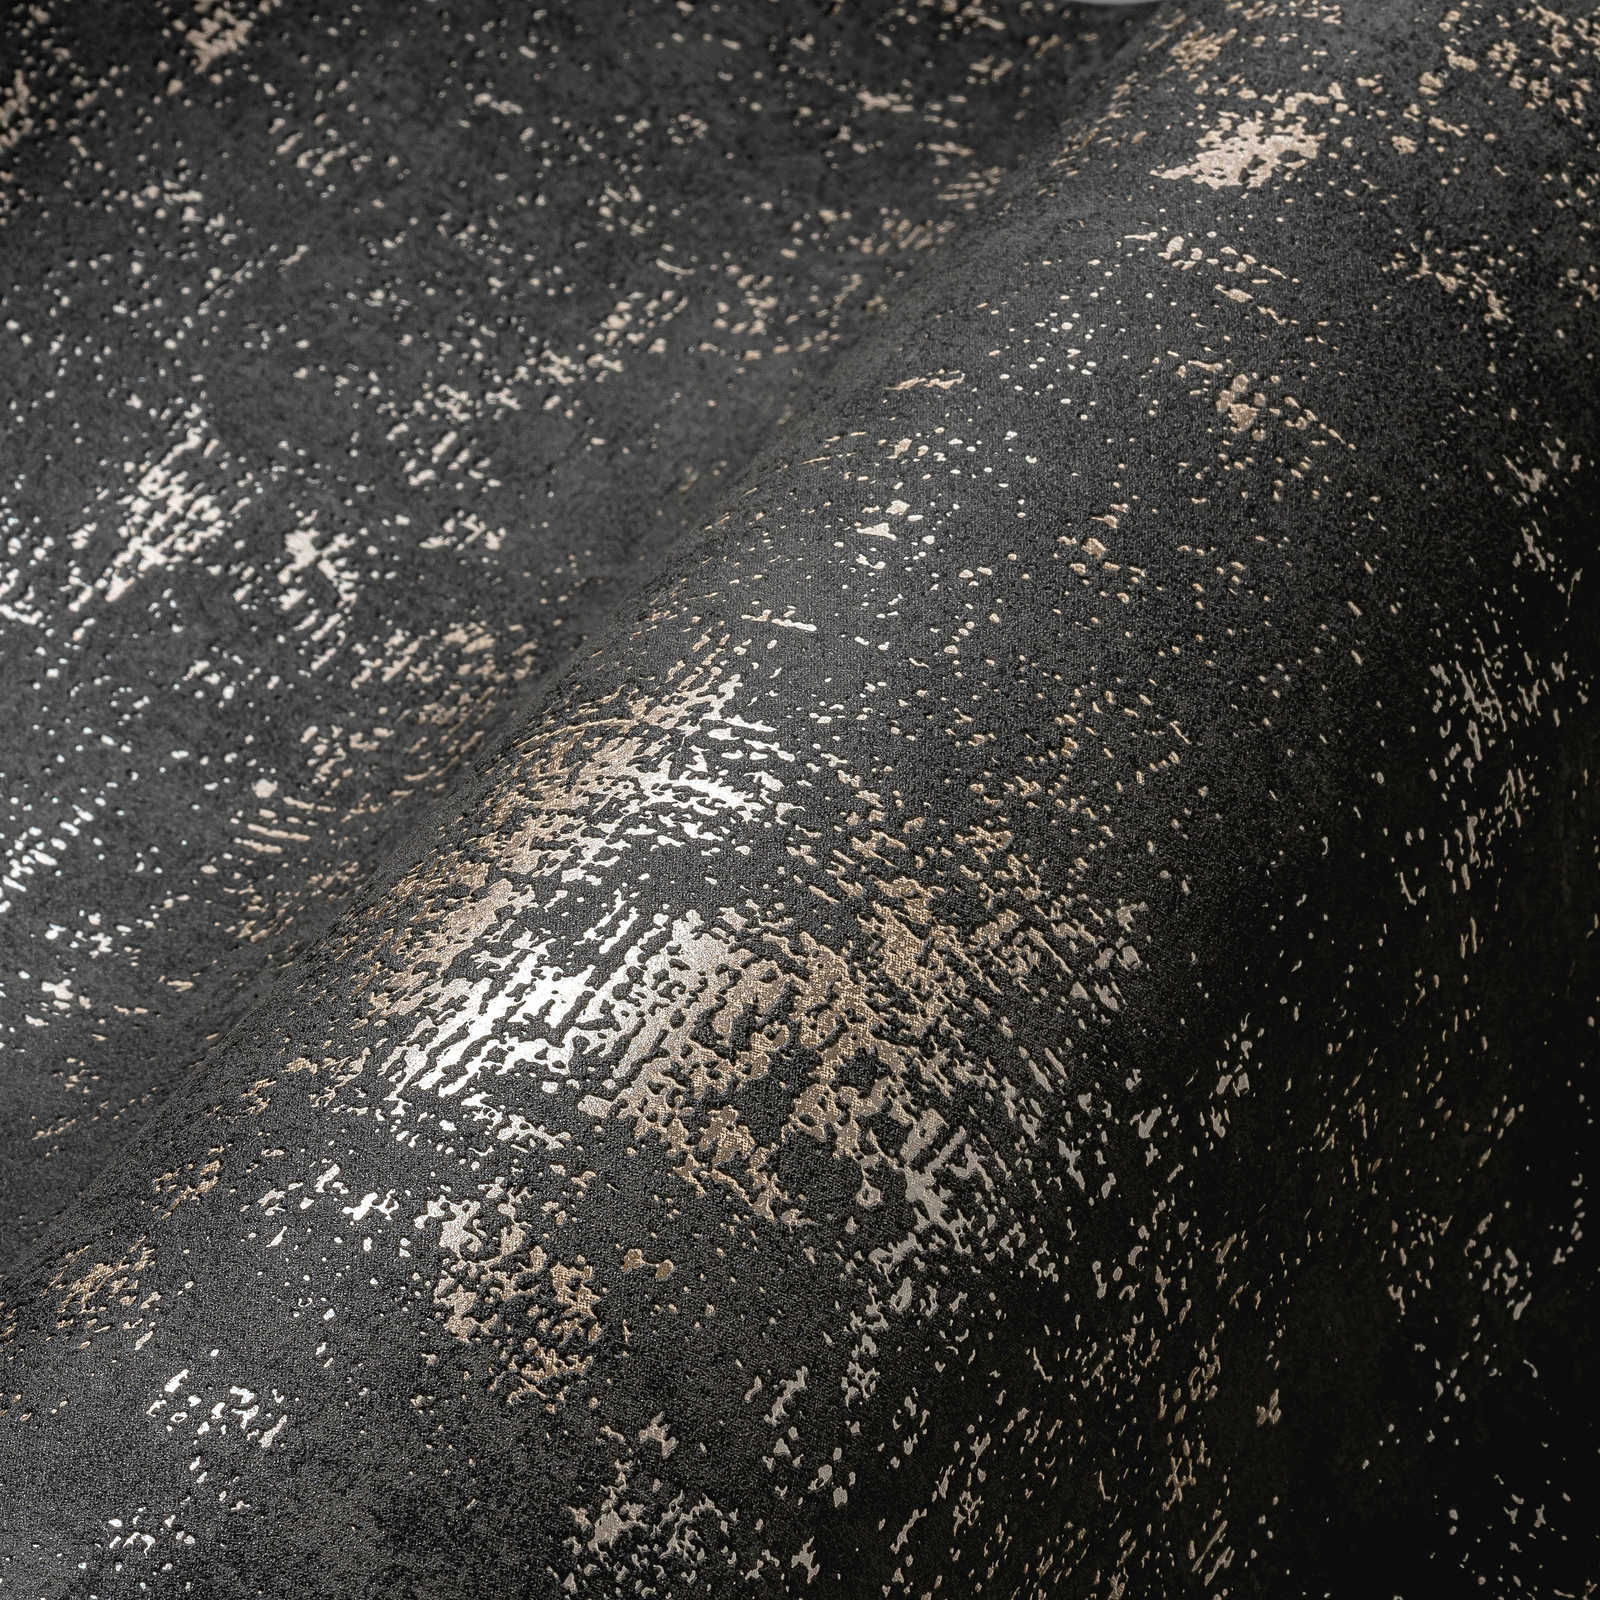             Black wallpaper rustic textured look with metallic effect
        